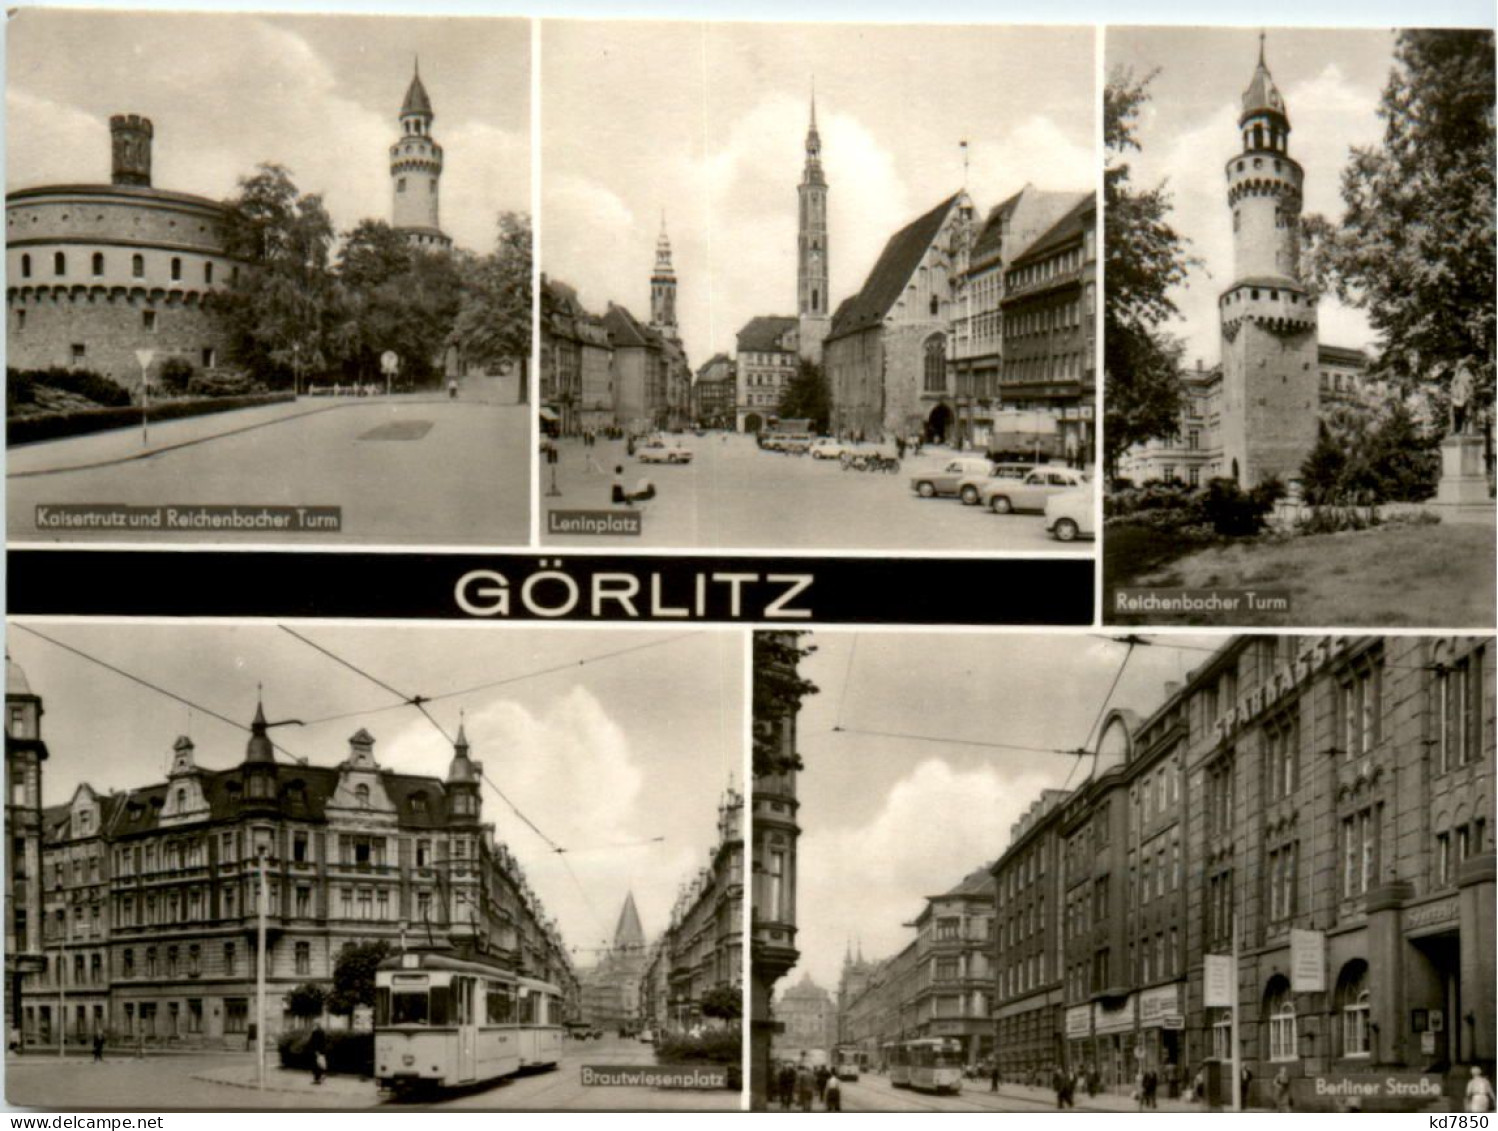 Görlitz, Div. Bilder - Goerlitz